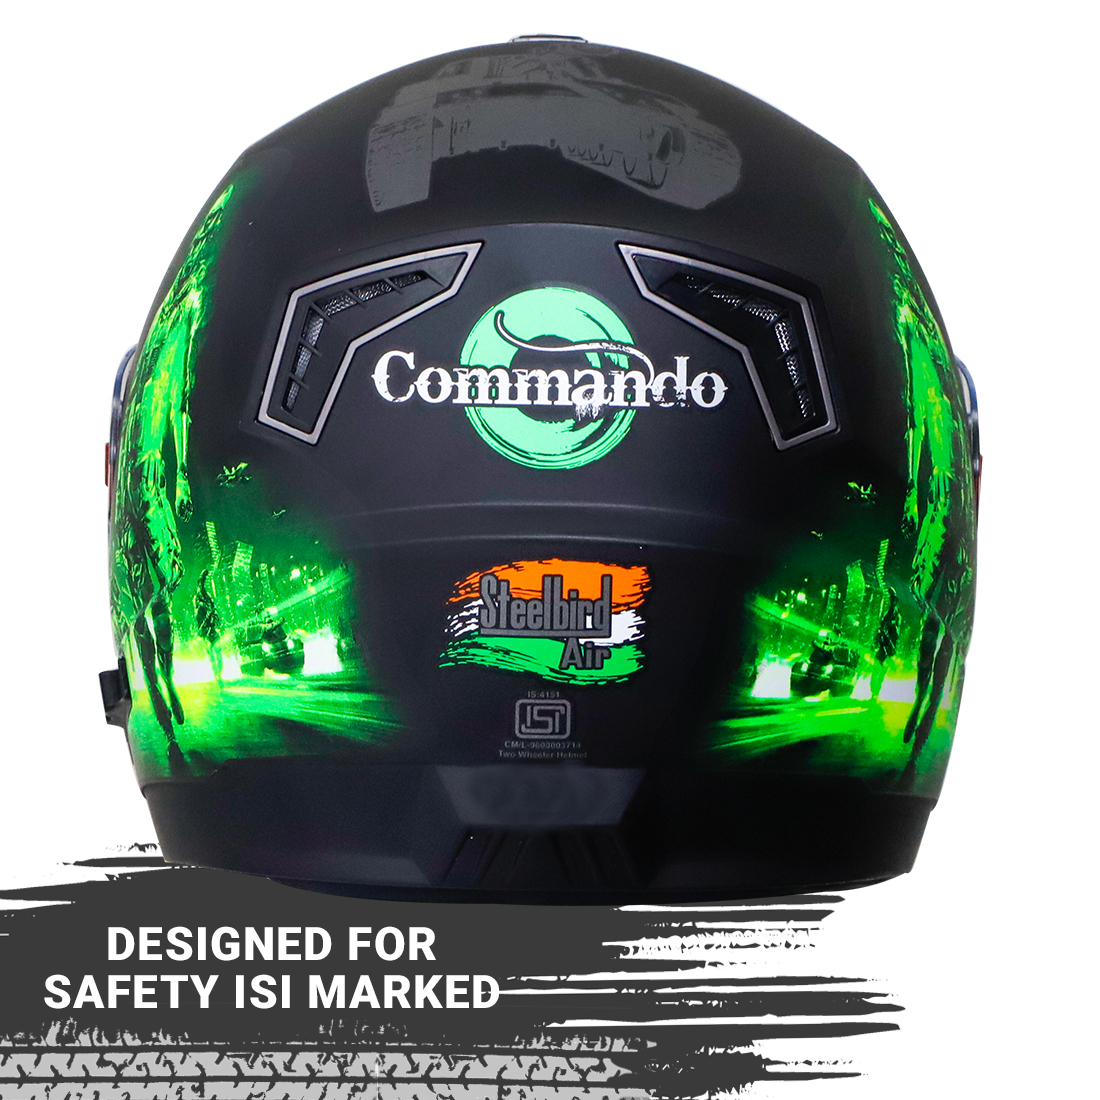 Steelbird SBA-1 Commando Double Visor Full Face Graphics Helmet, Inner Silver Sun Shield And Outer Clear Visor (Glossy Black Green)